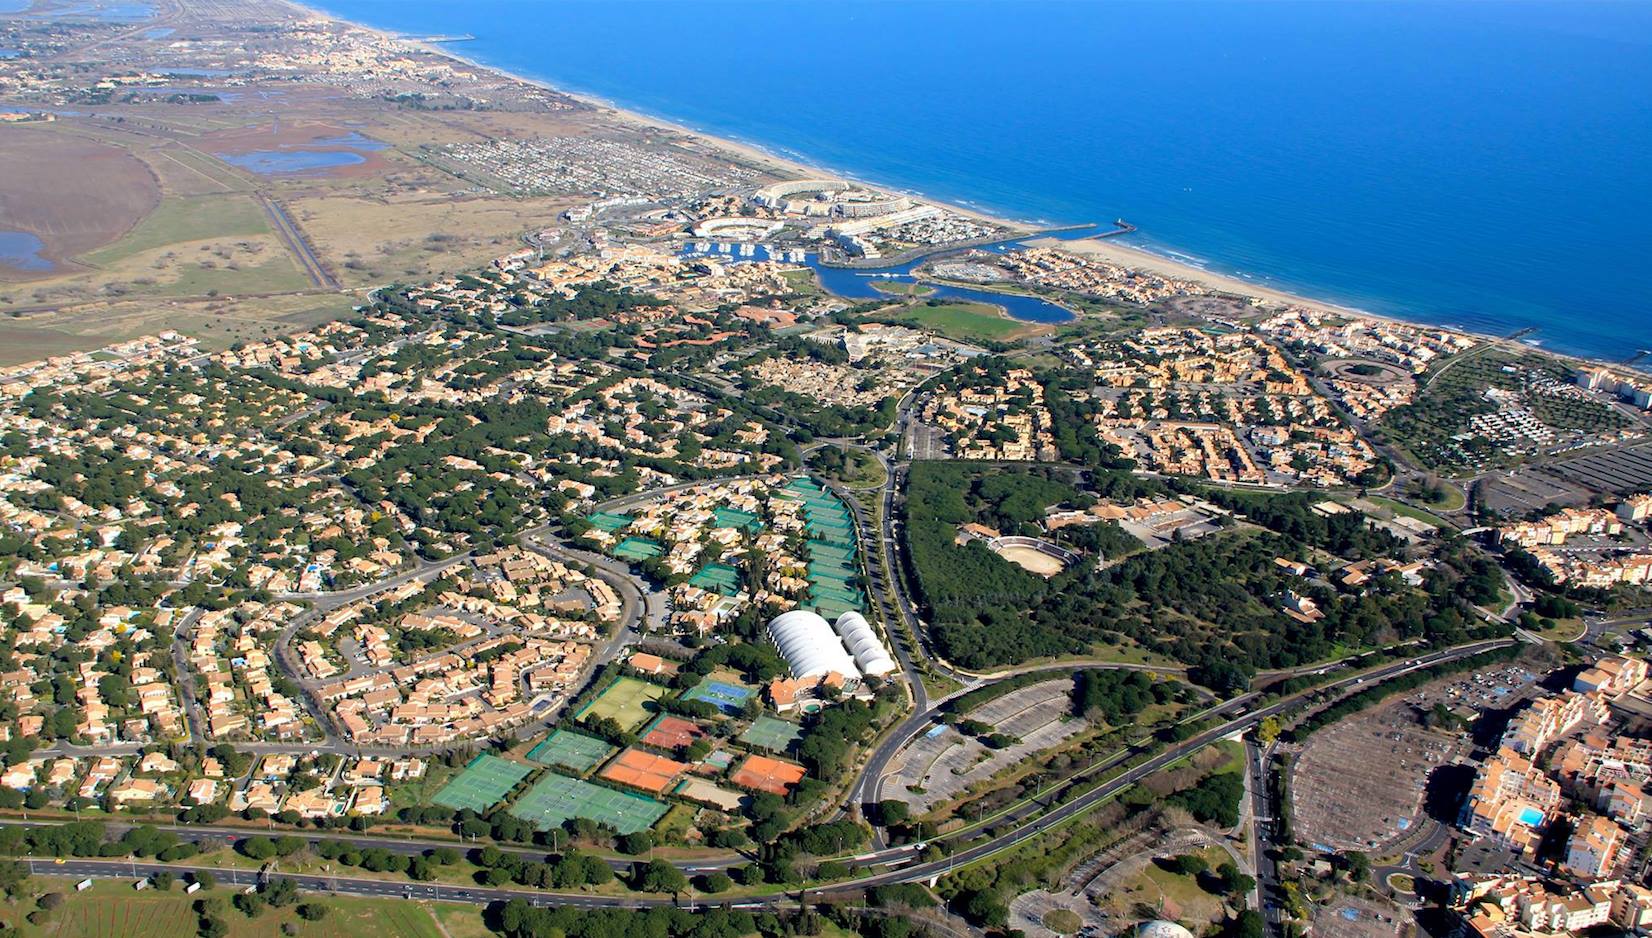 La PadelLa pro Cup si svolgerà al Centre International du Cap d'Agde